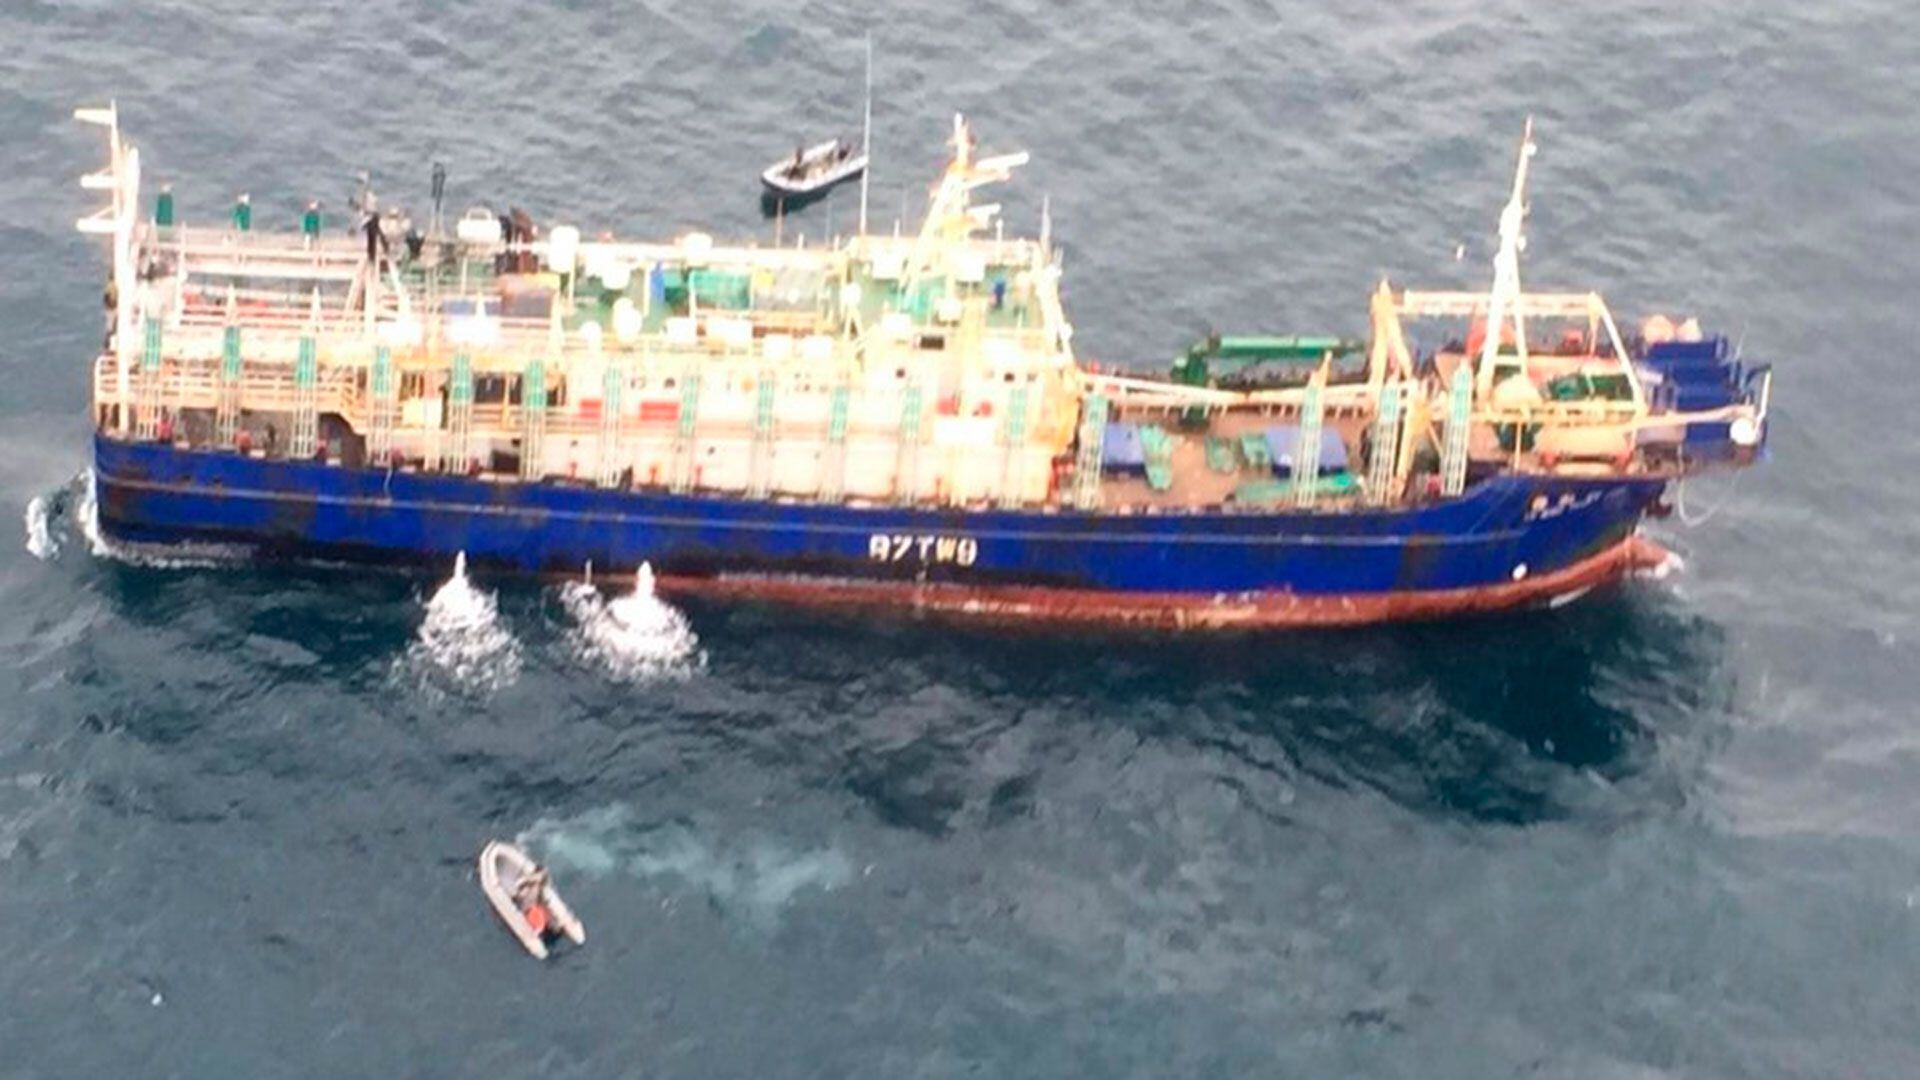 La Armada uruguaya detuvo a un buque chino por pesca ilegal después de perseguirlo toda la noche